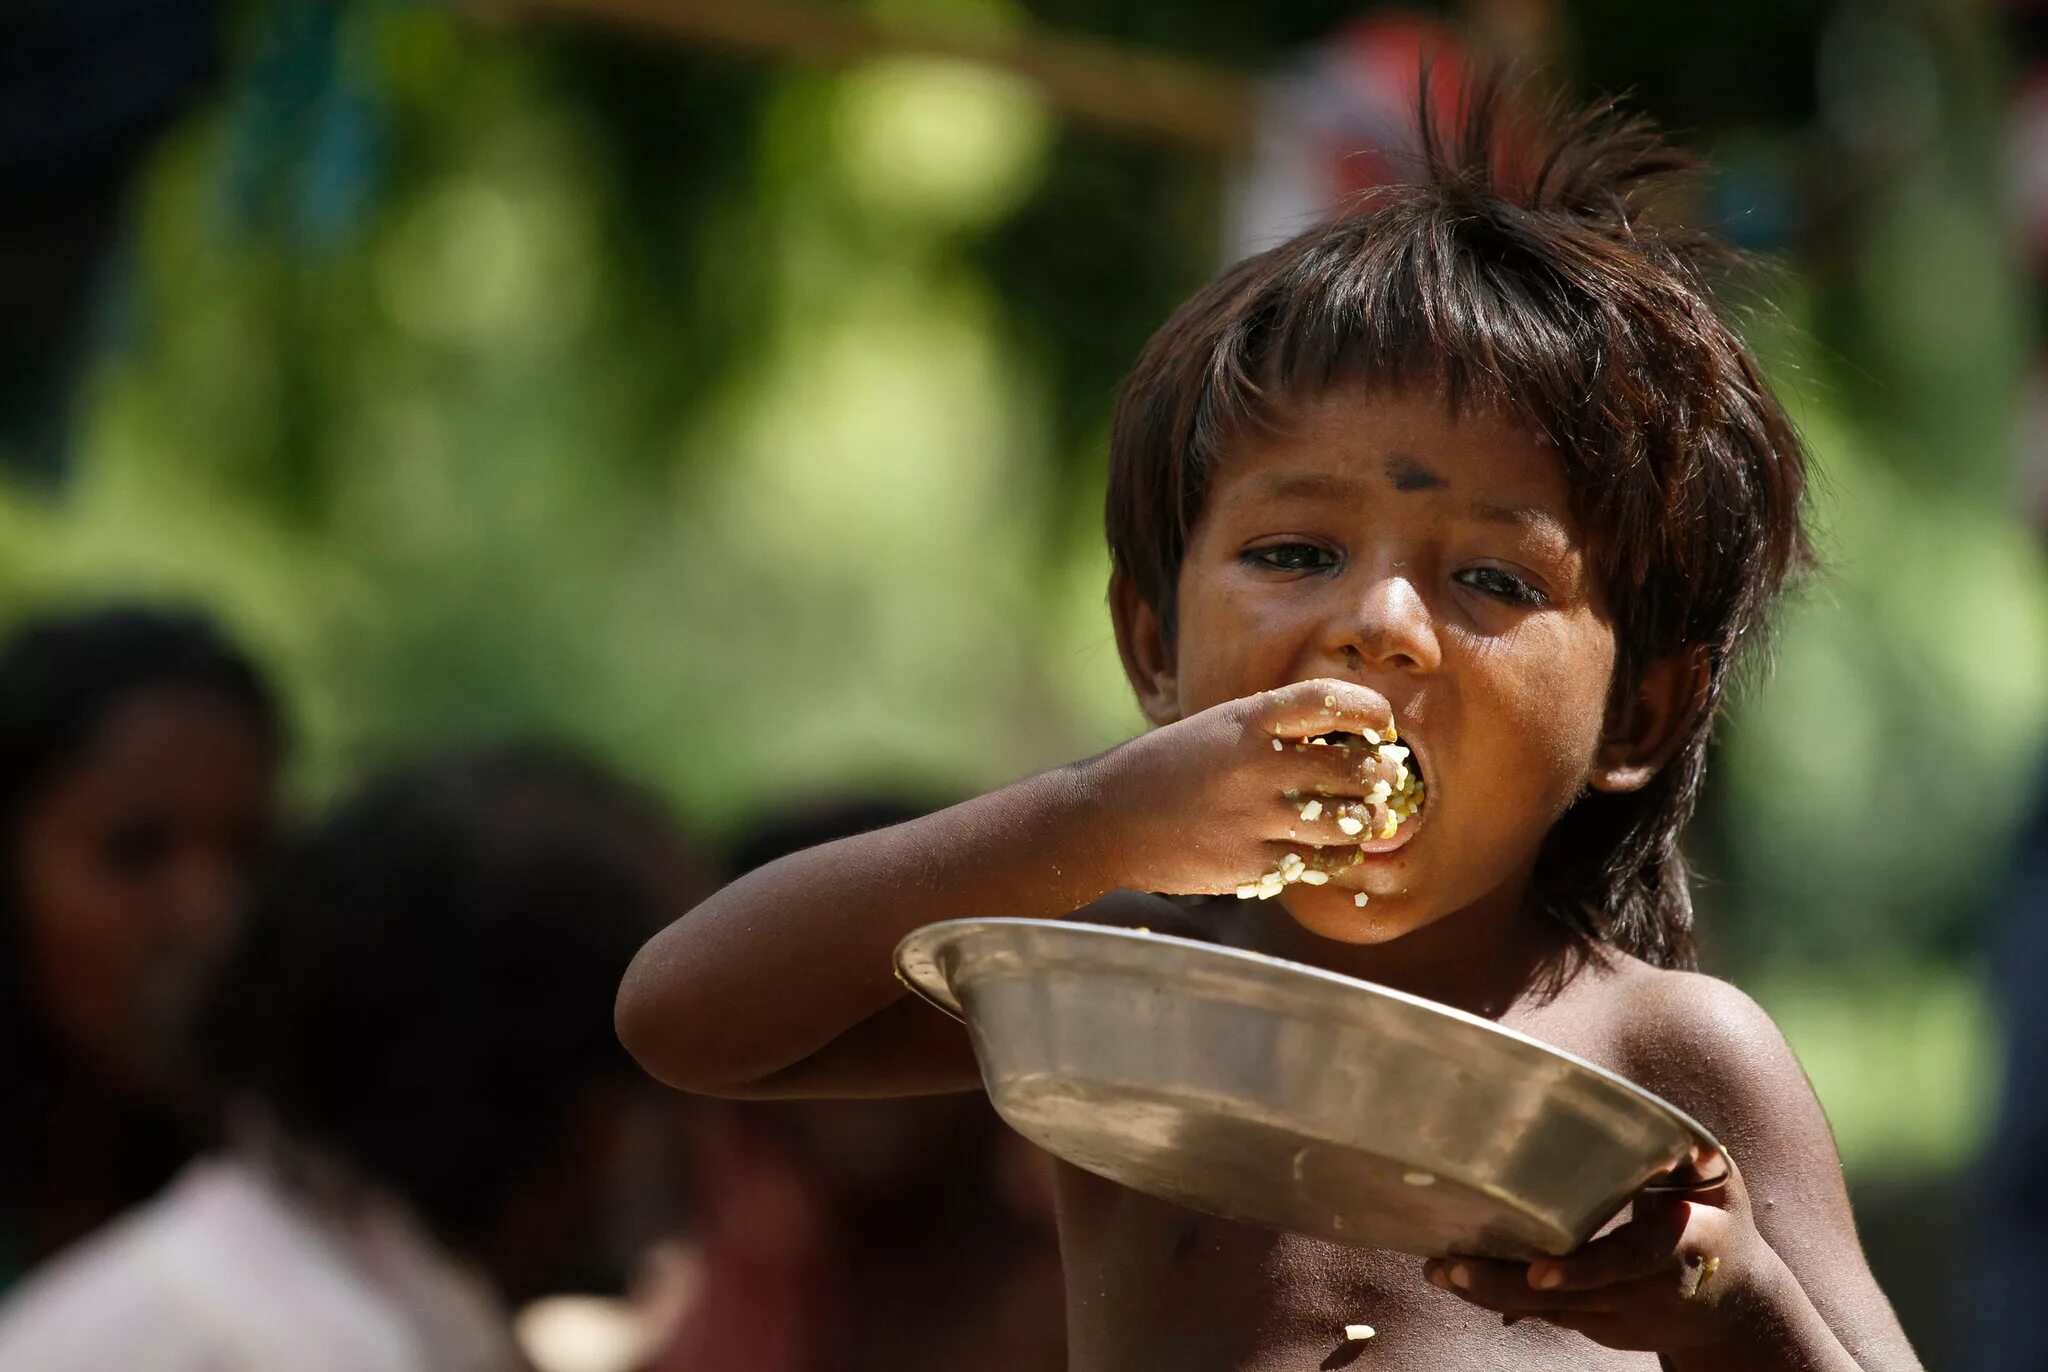 Голодный народ. Что есть в Индии дети.